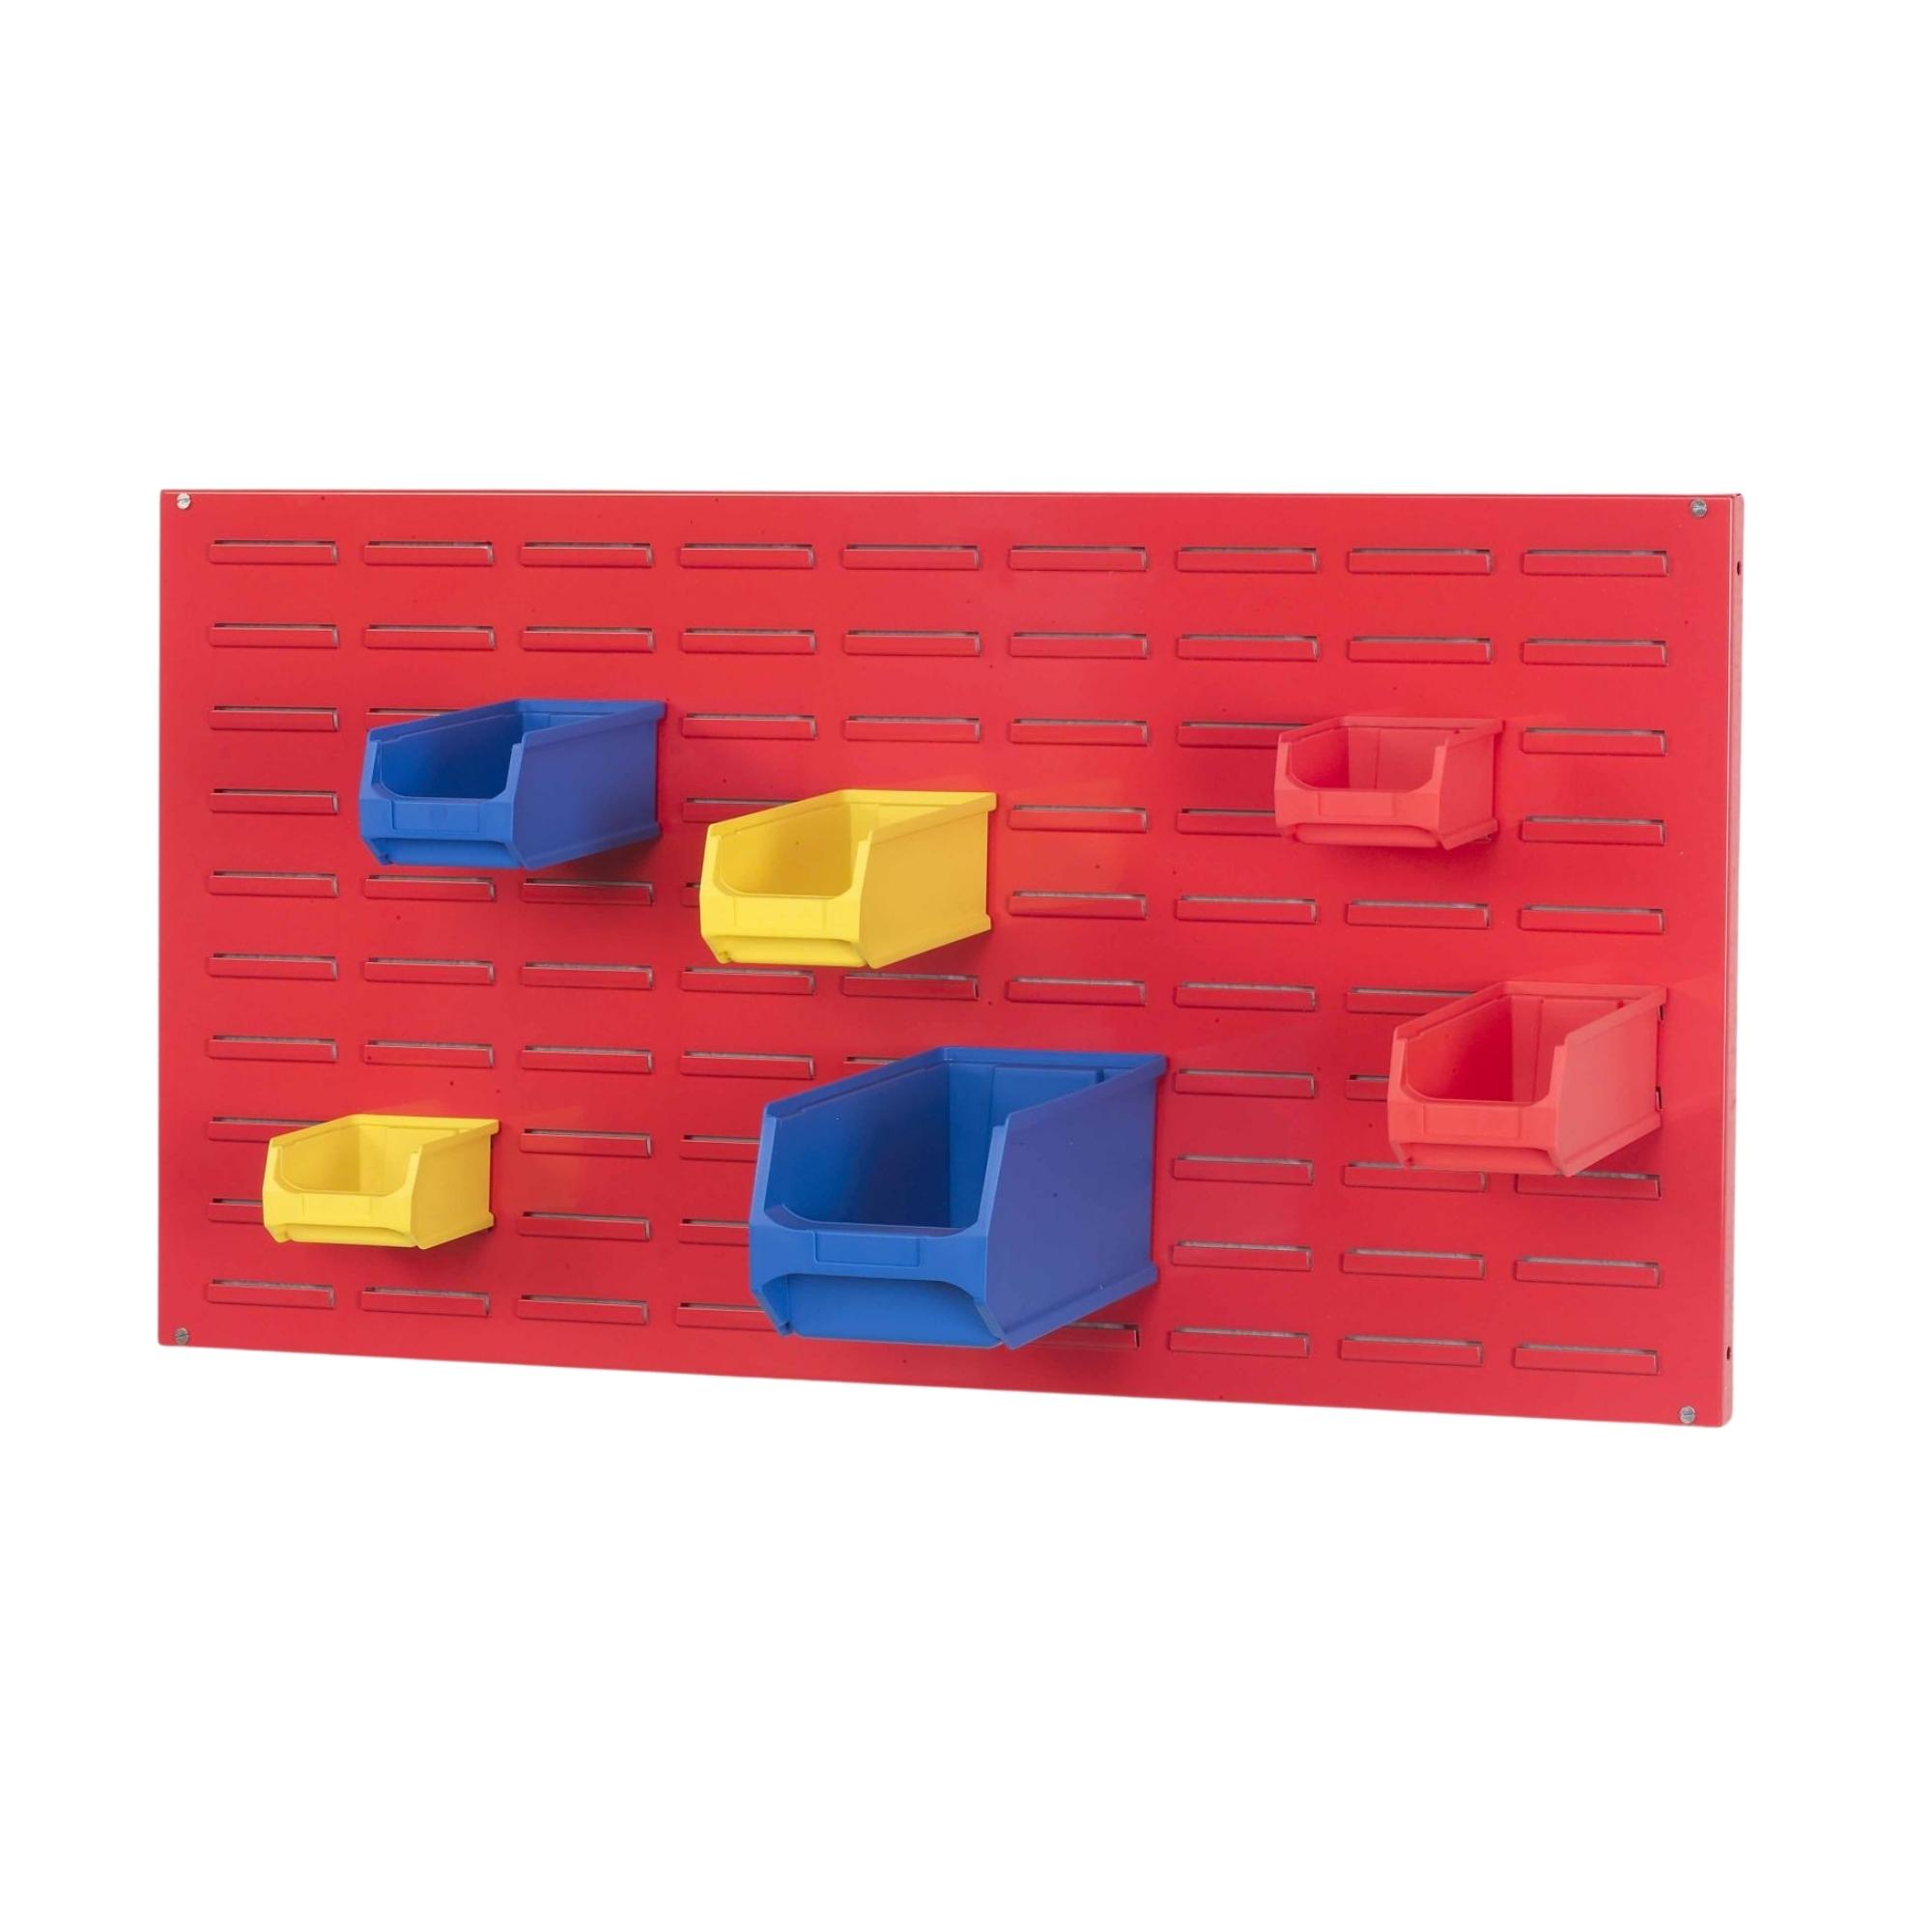 Trägersystem Rote Systemplatte für Sichtlagerboxen (ohne Sichtlagerboxen) | HxBxT 50x100x2cm | Trägerplatte, Wandhalterung, Kleinteileaufbewahrung, Sortimentsboxhalterung